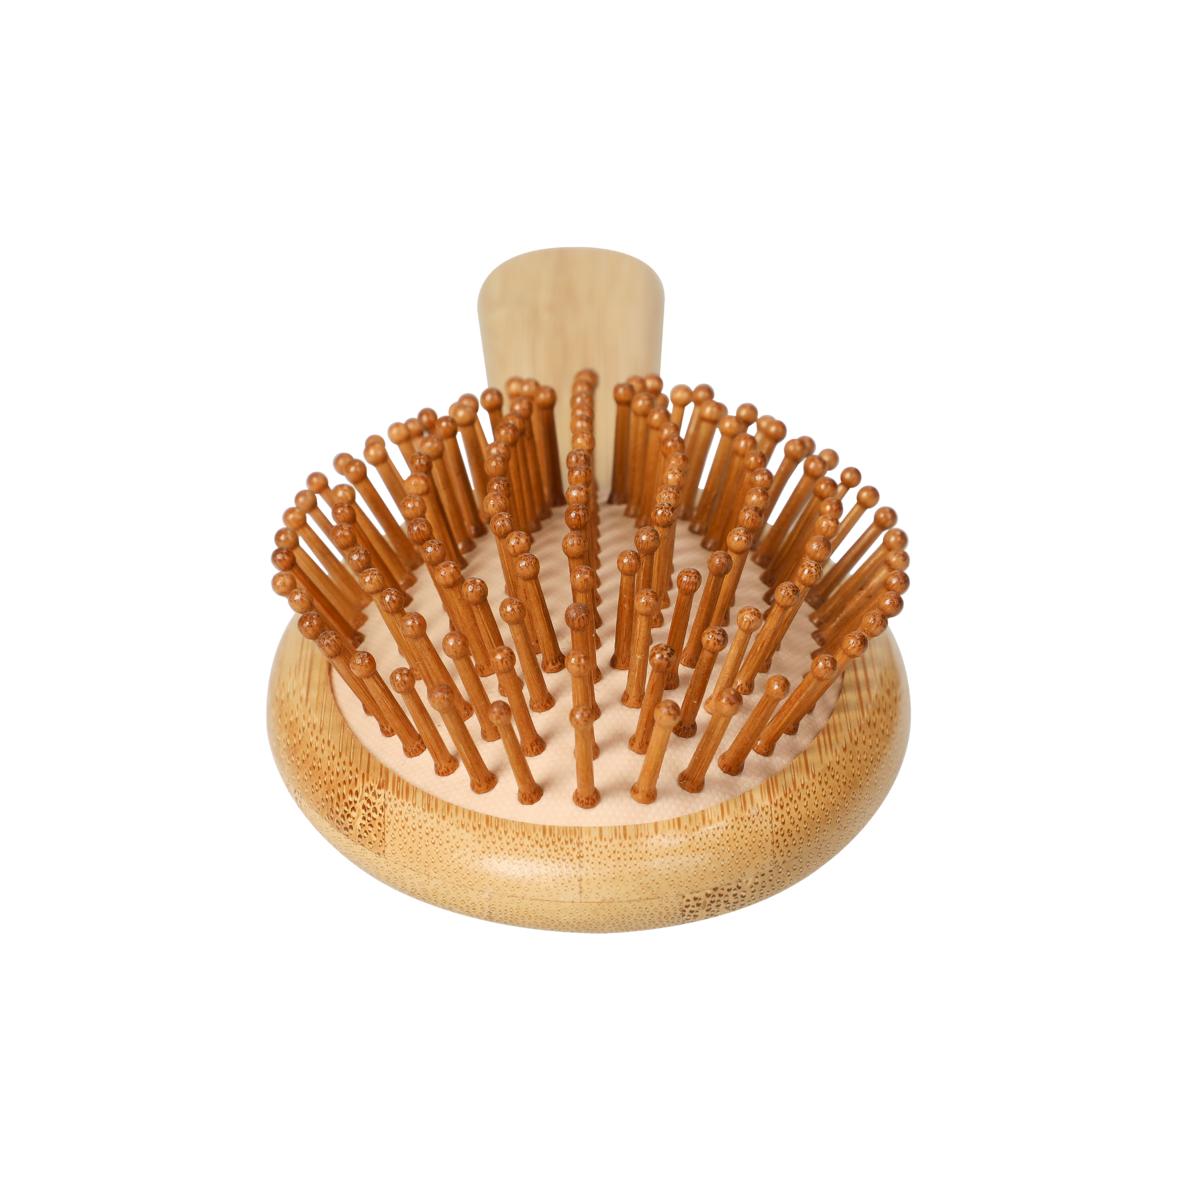 Nachhaltige Bambus-Haarbürste "Comb" für geschmeidiges Haar - Natürlich aus Holz, Antistatische Borsten, Sanfte Pflege und Glanz!